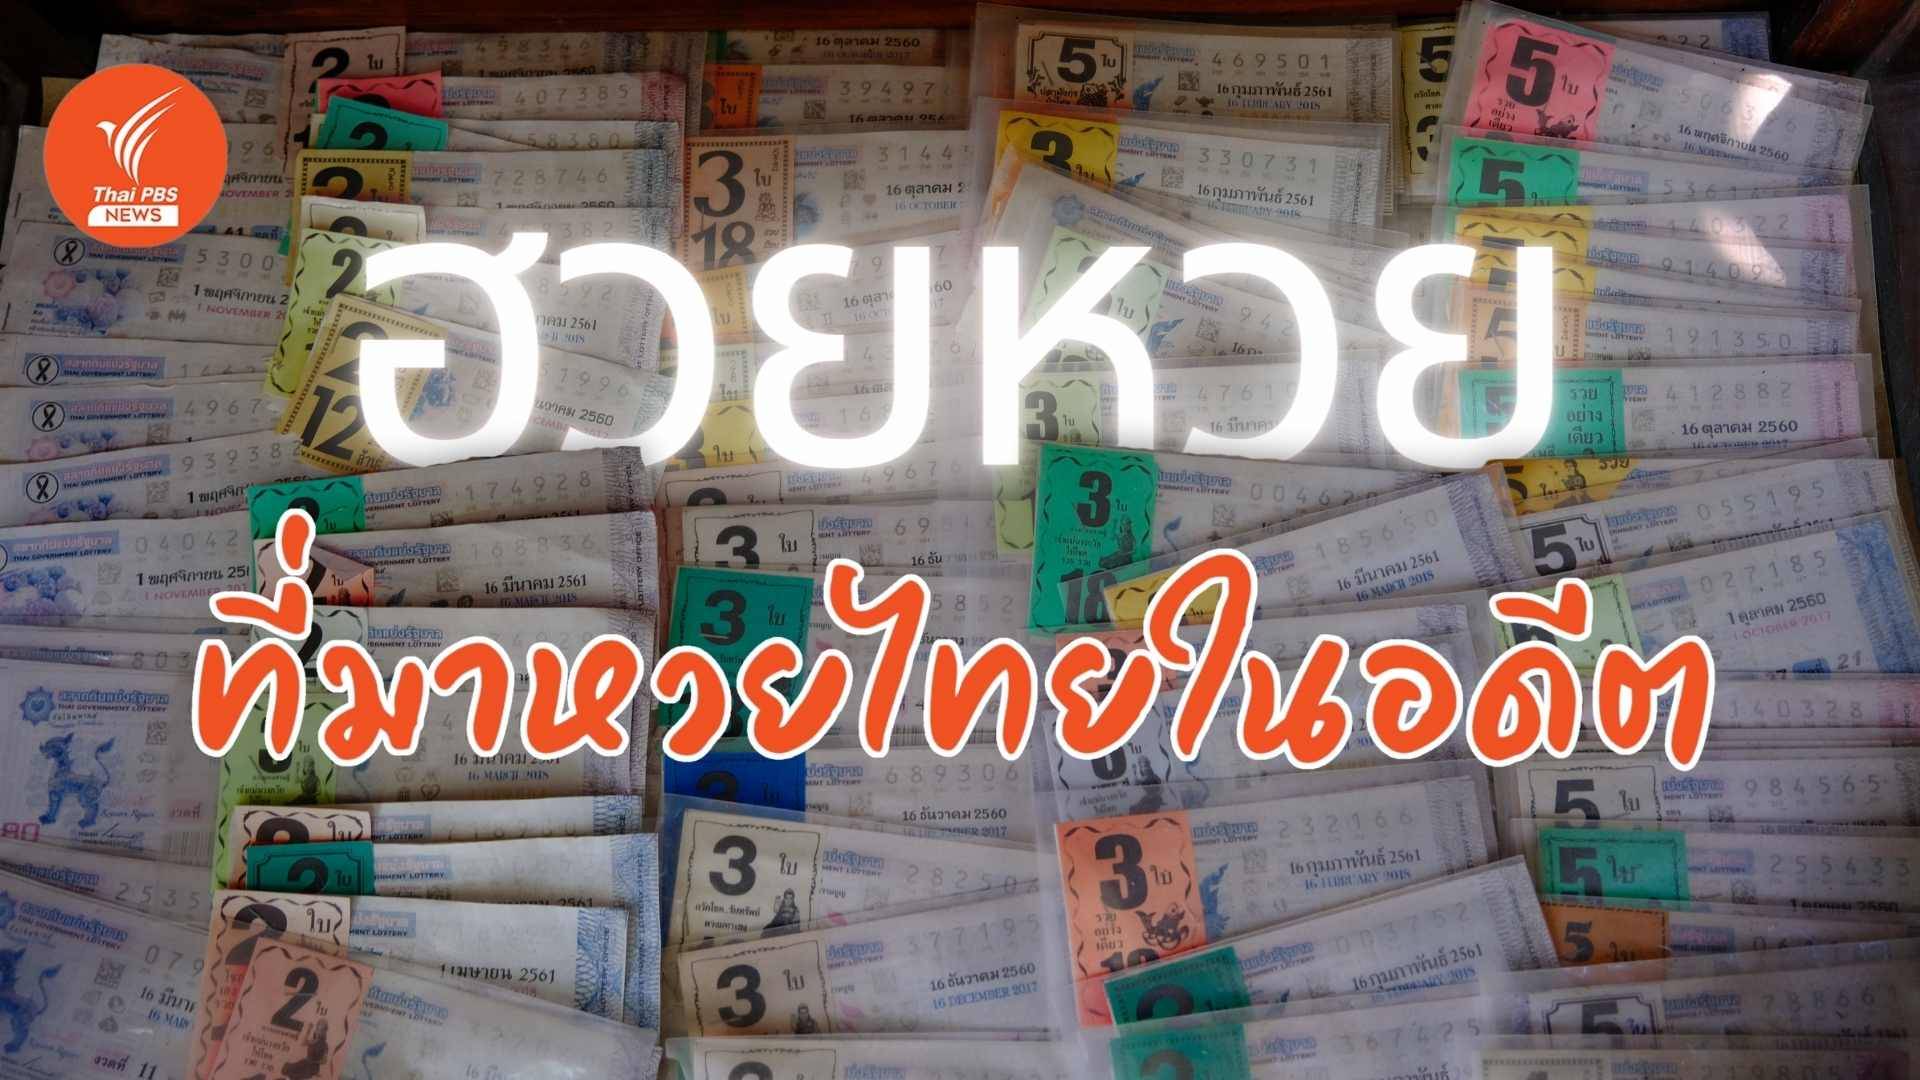 "ฮวยหวย" กลยุทธ์ชวนคนไทยขุดเงินจากไหมาเล่นหวย